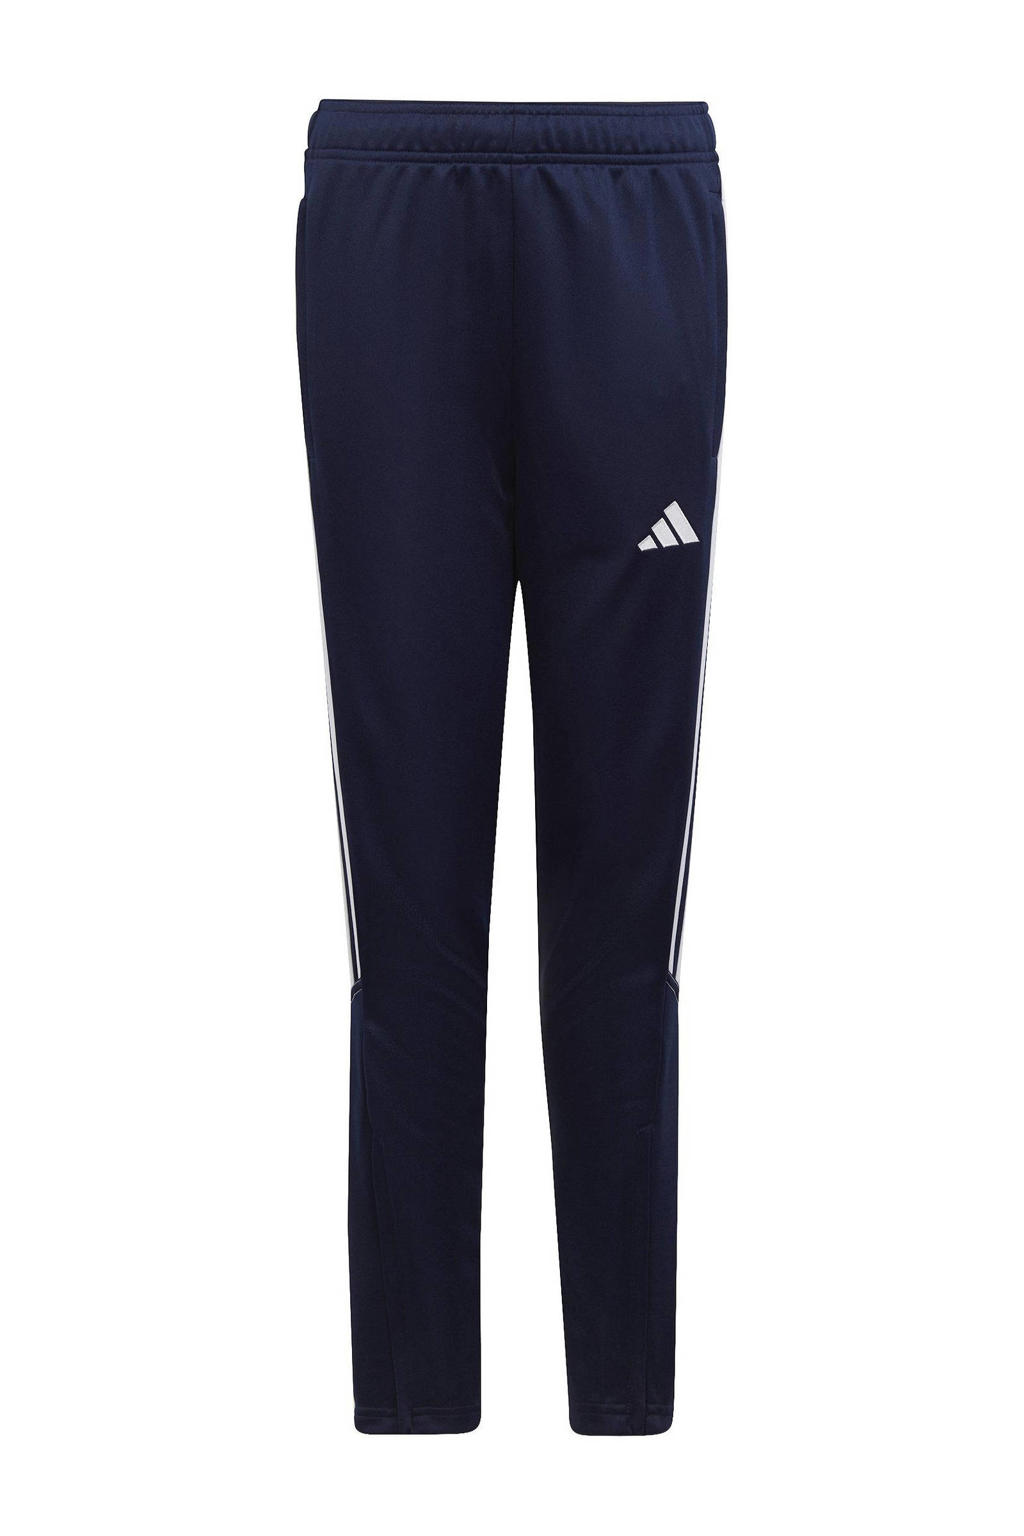 Donkerblauw en witte jongens en meisjes adidas Performance Junior sportbroek Tiro van polyester met regular fit en elastische tailleband met koord